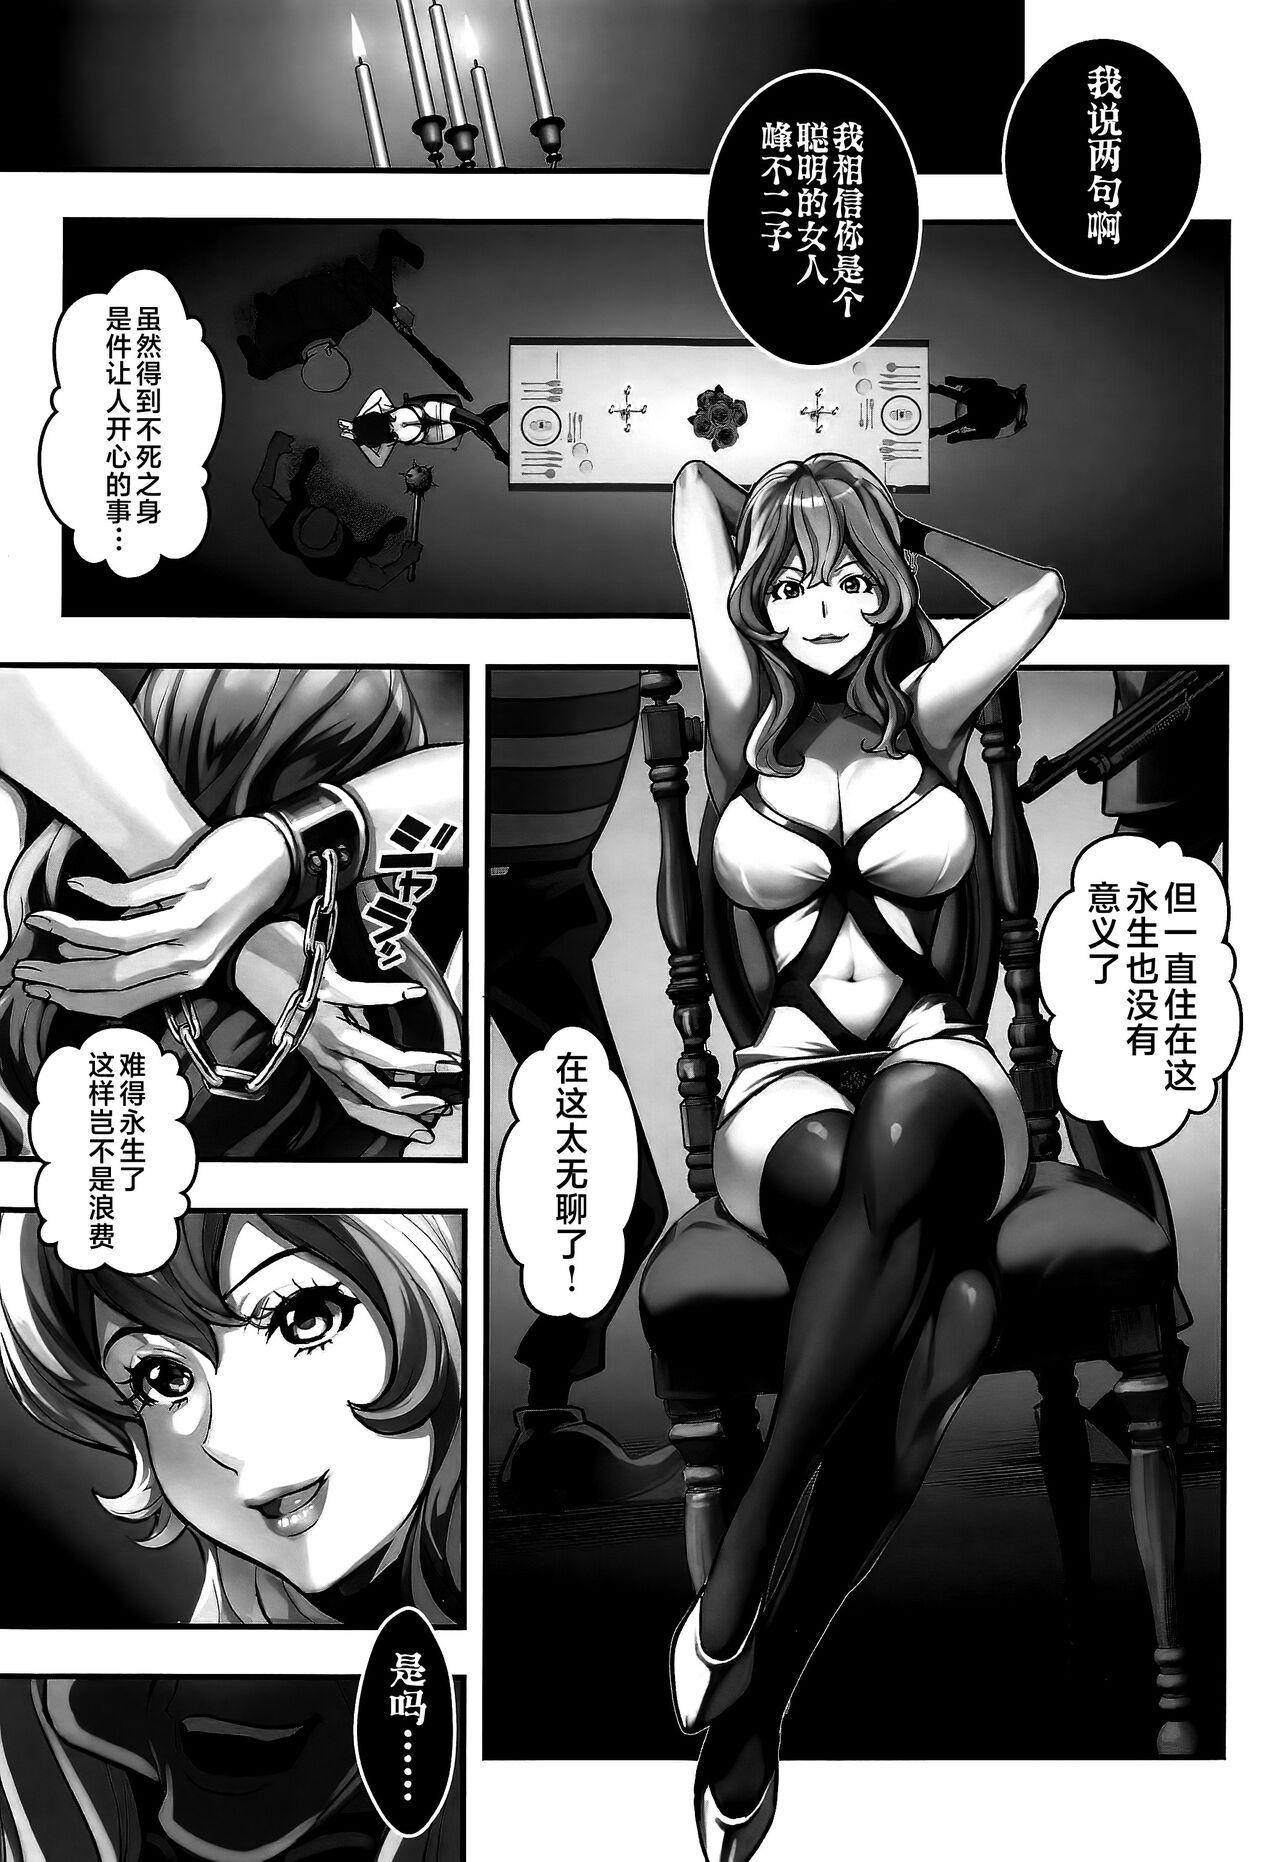 Duro Mamo no Fukushuu - REVENGE OF THE MAMO - Lupin iii Negra - Page 2